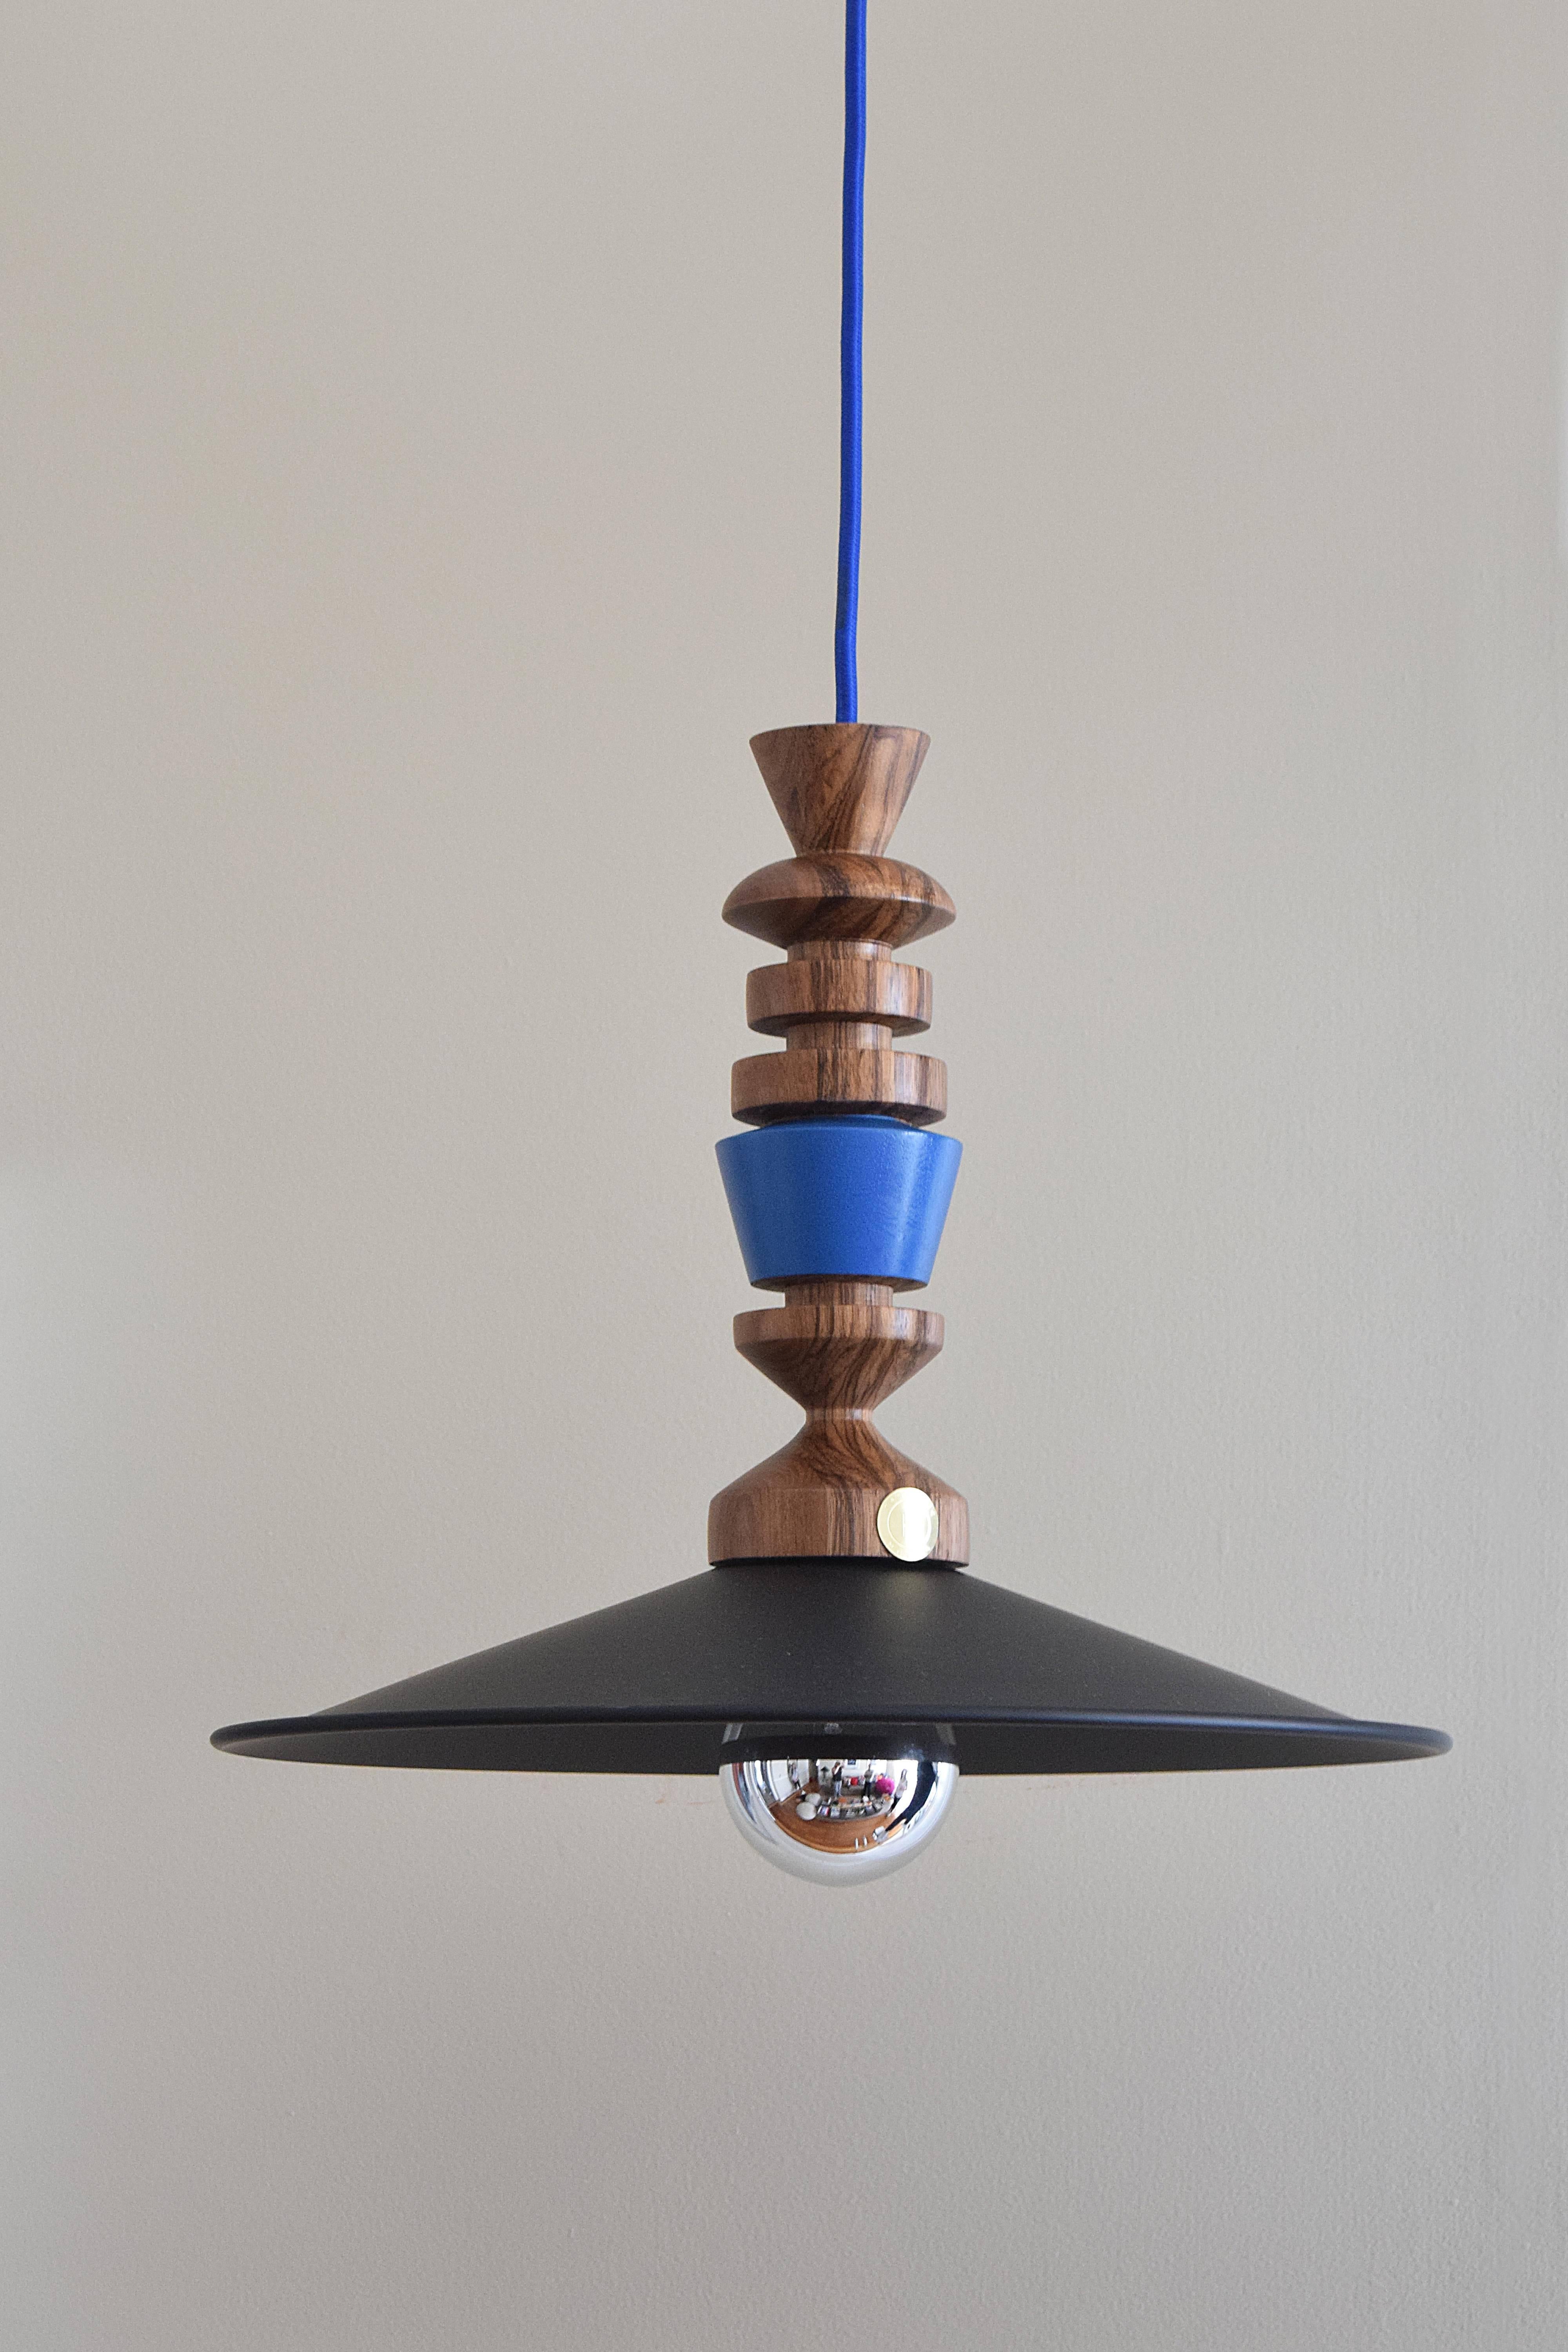 Die Alquisiras-Lampen, die in diesem zeitgenössischen Design hergestellt werden, sind aus der Erinnerung an altes mexikanisches Holzspielzeug entstanden. Diese Stücke erinnern uns an die spielerischen Momente, als wir Kinder waren. Es erinnert uns